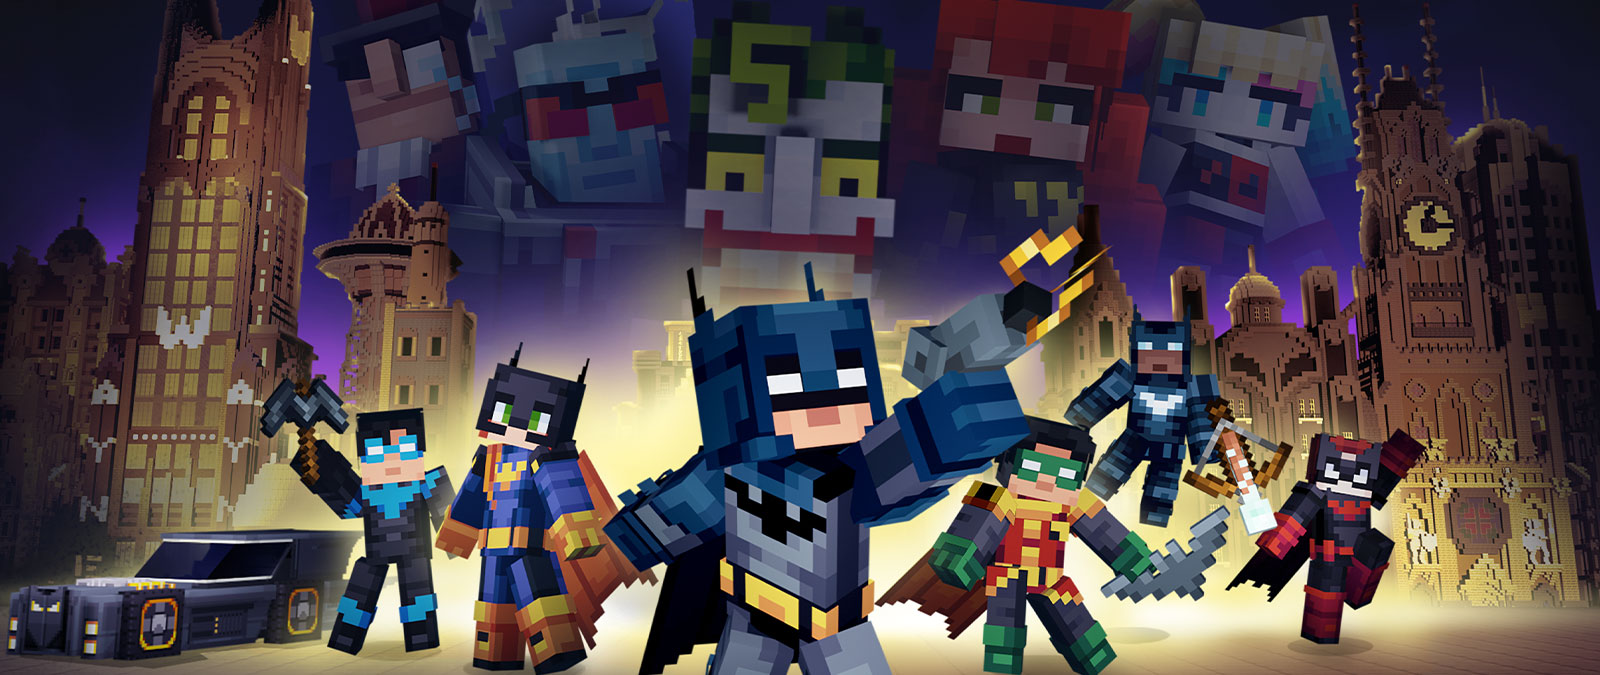 Batman og Bat-familien poserede sammen med skurke med udsigt over en Minecraft Gotham City.